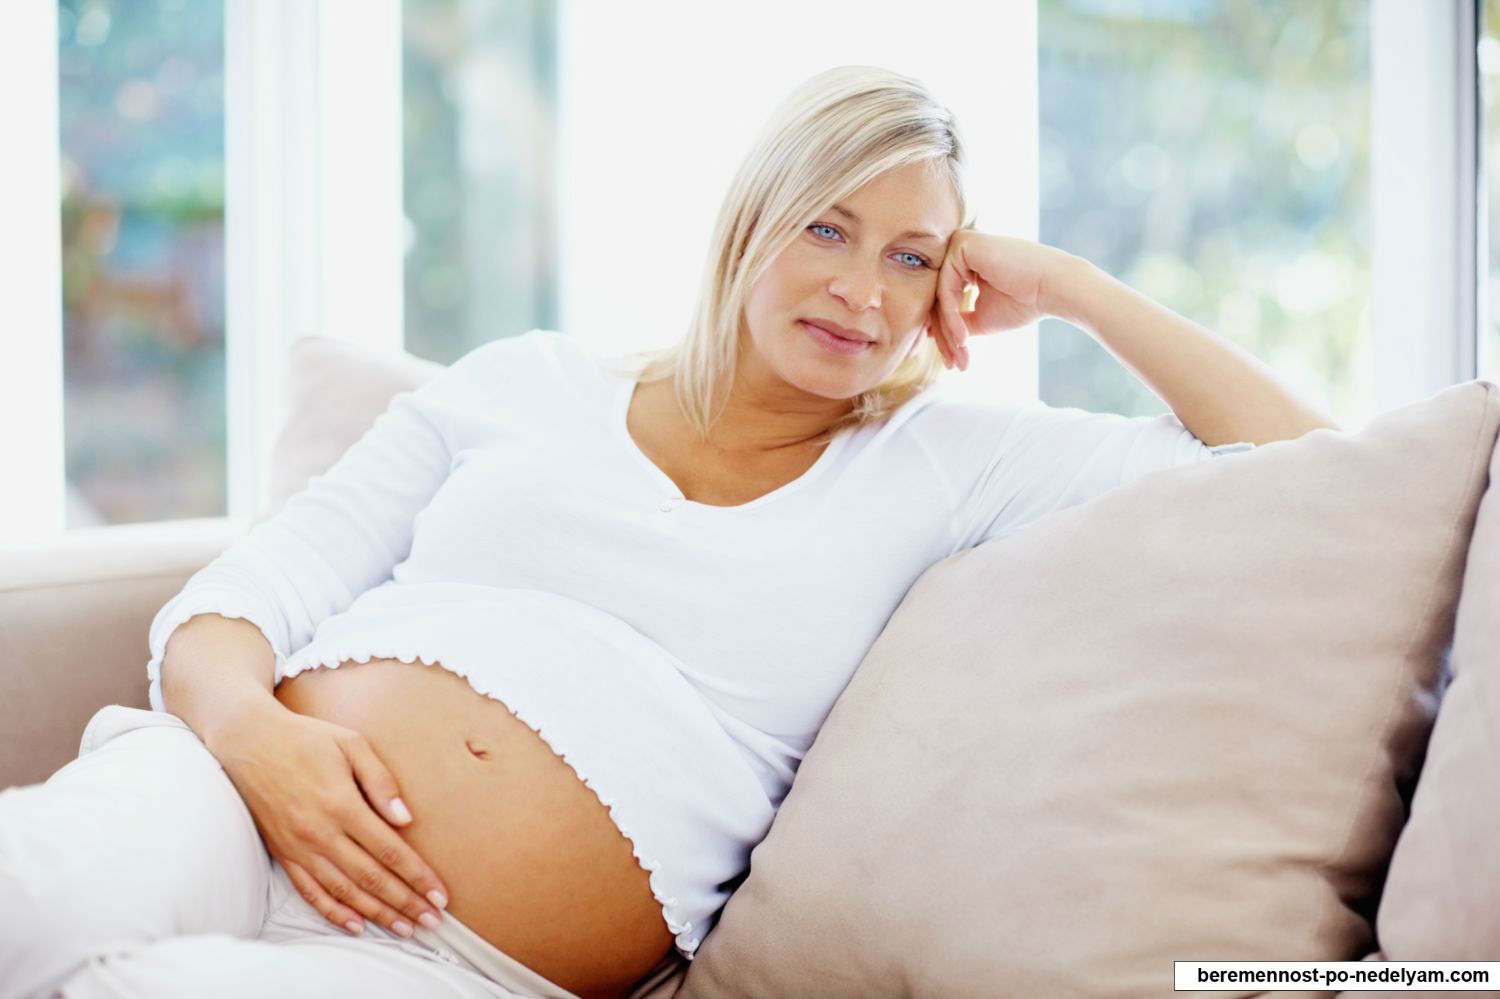 Противопоказания для беременности после 40